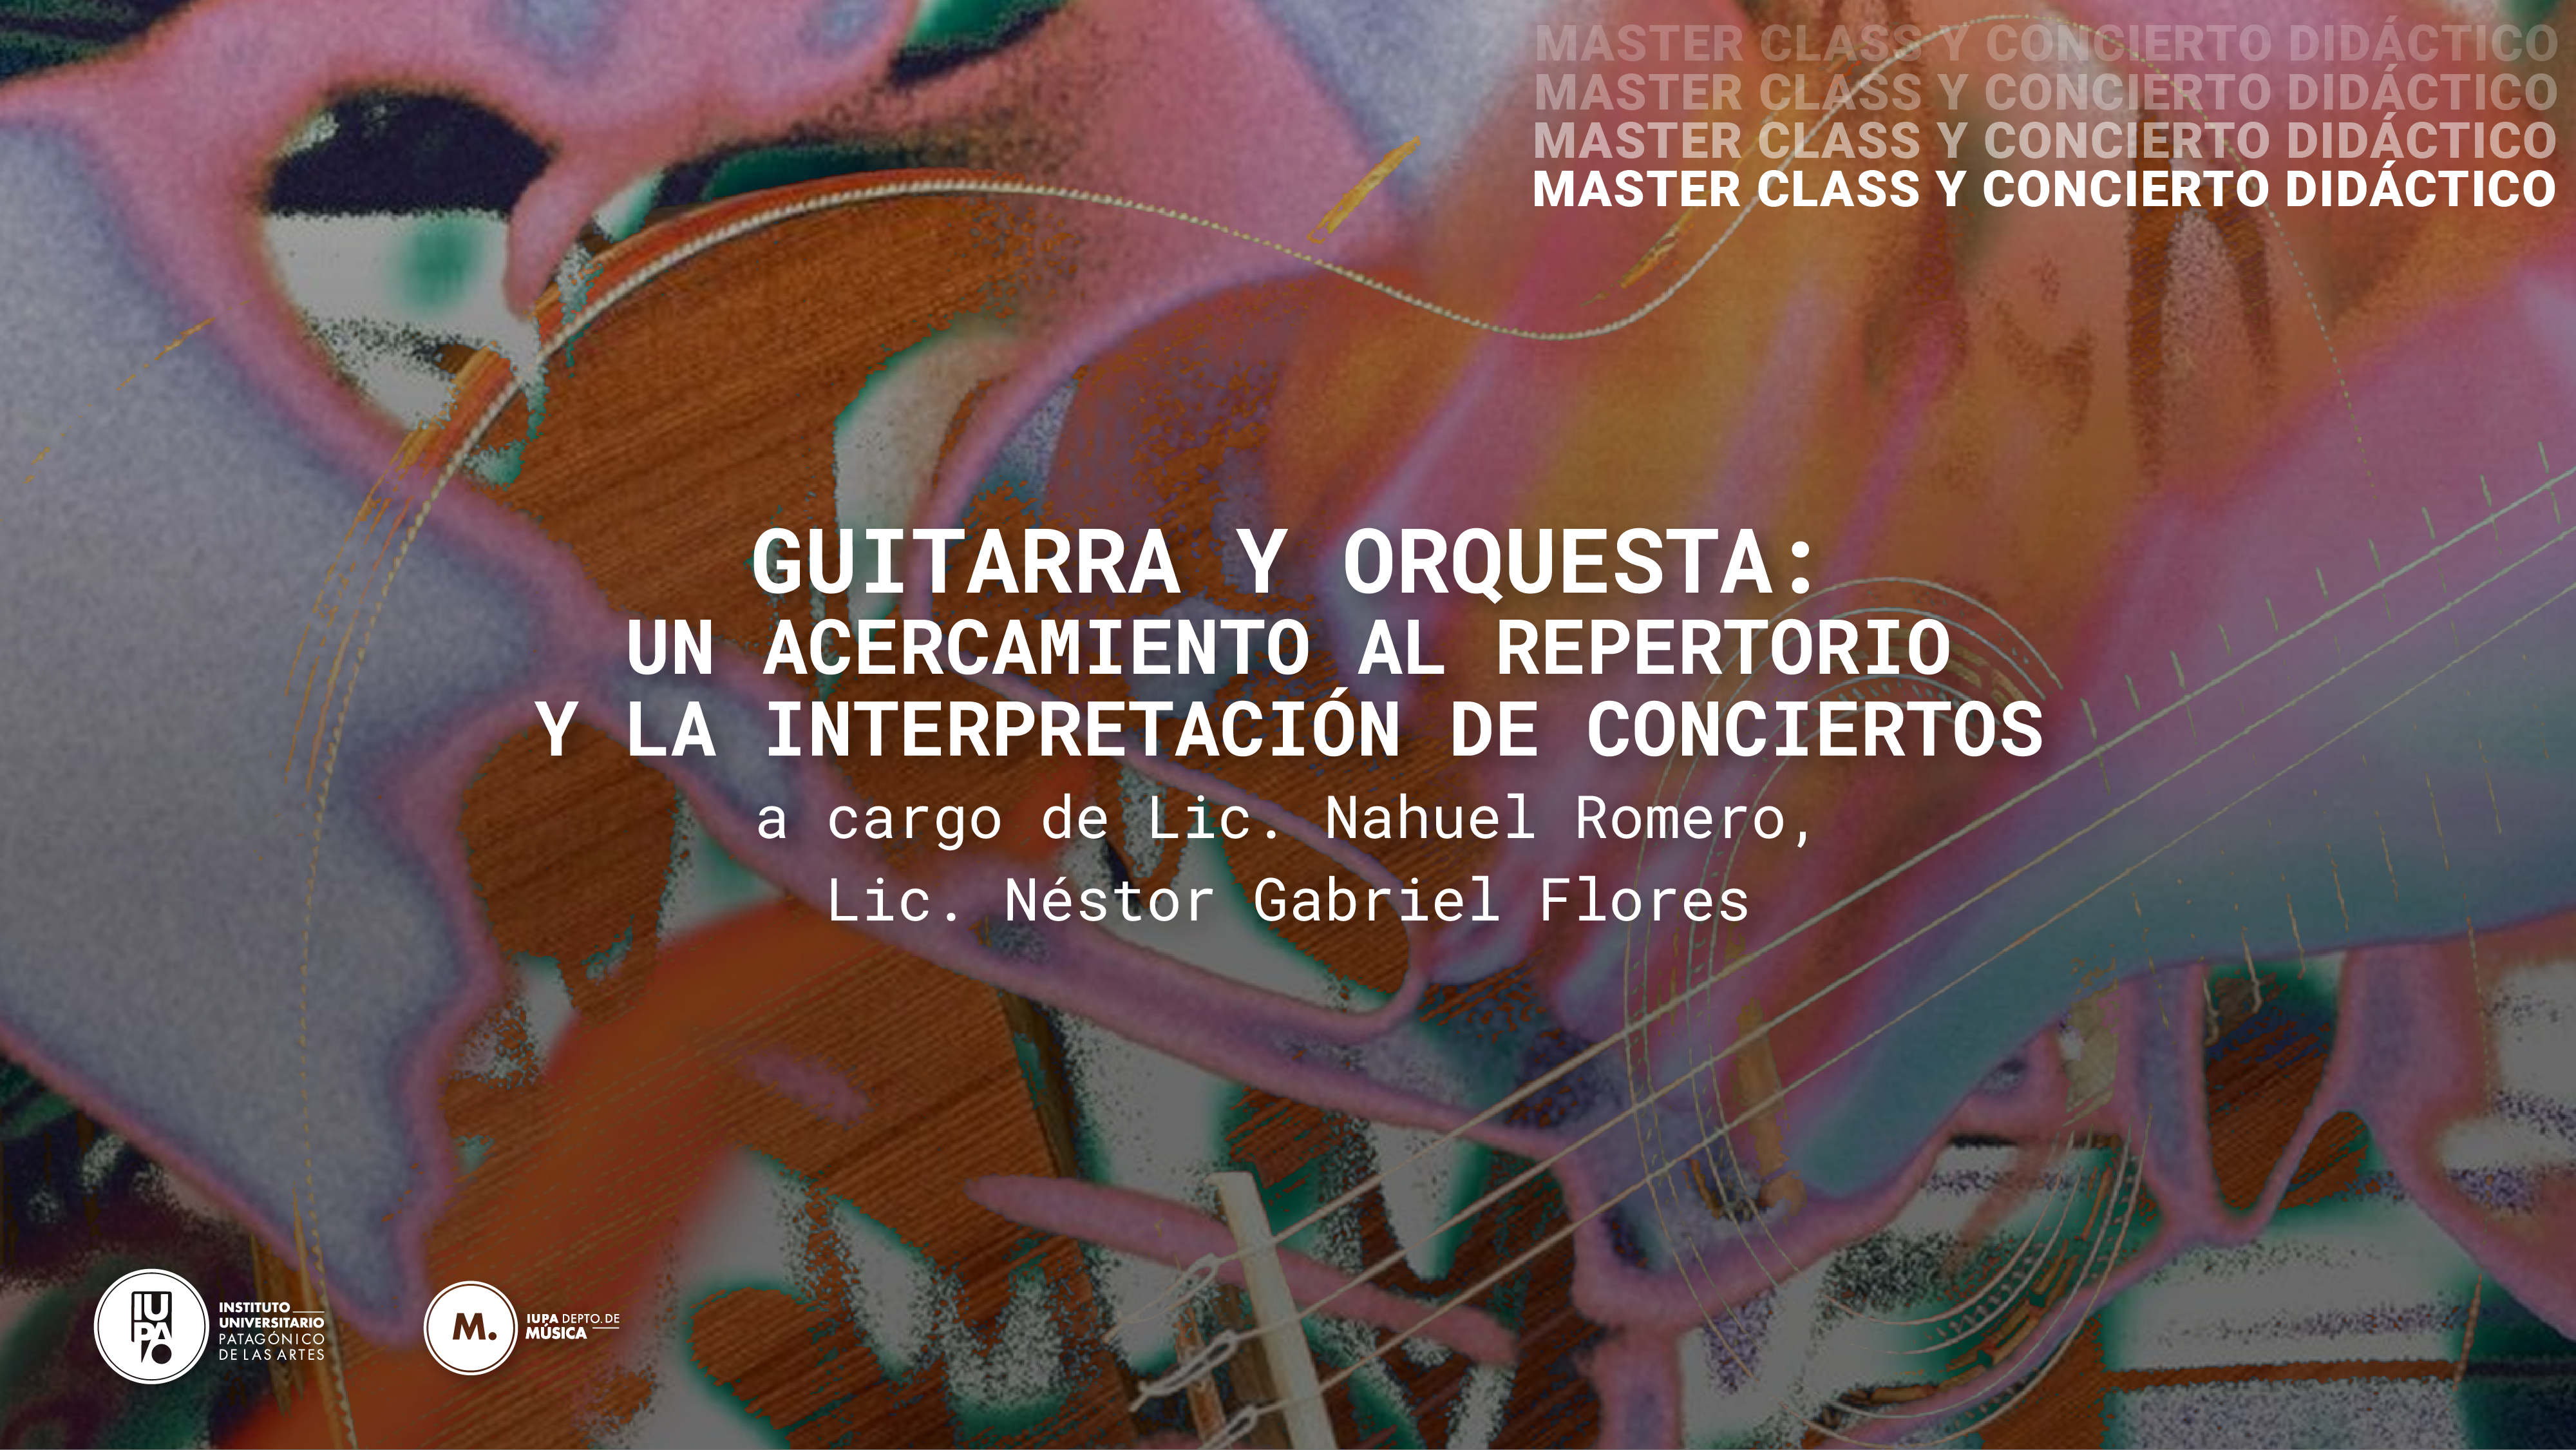 Master class guitarra y orquesta